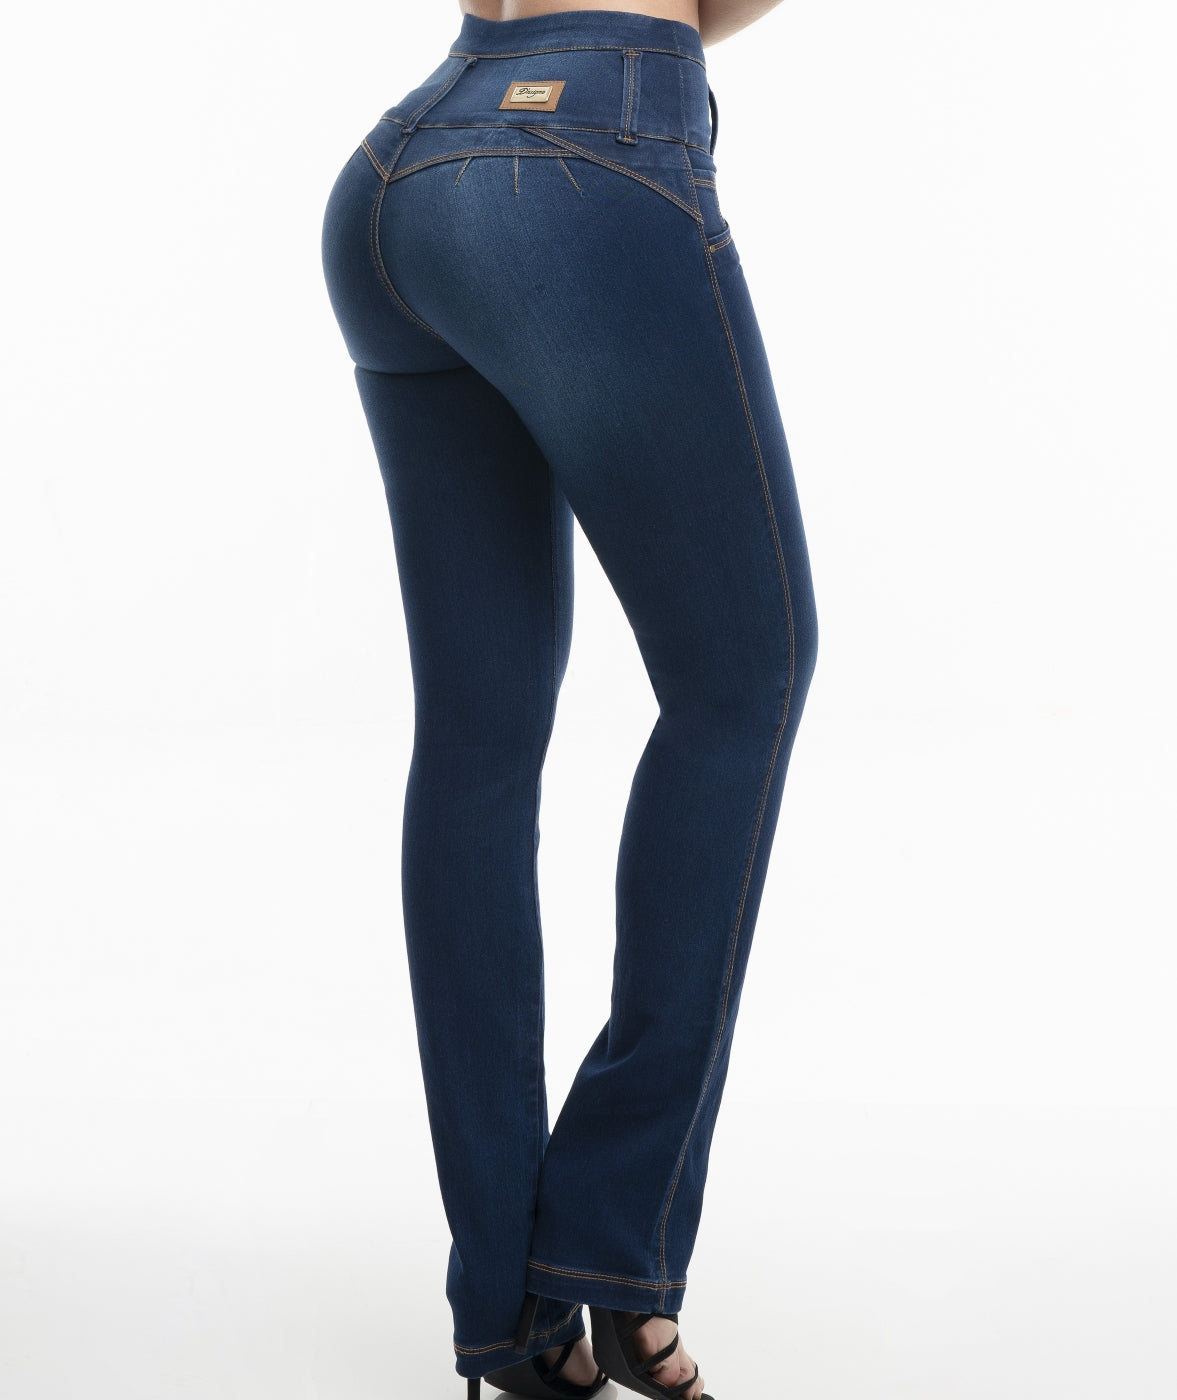 Jeans de Moda Colombia - Jeans Levanta Cola - Jeans Tiro Alto Mujer